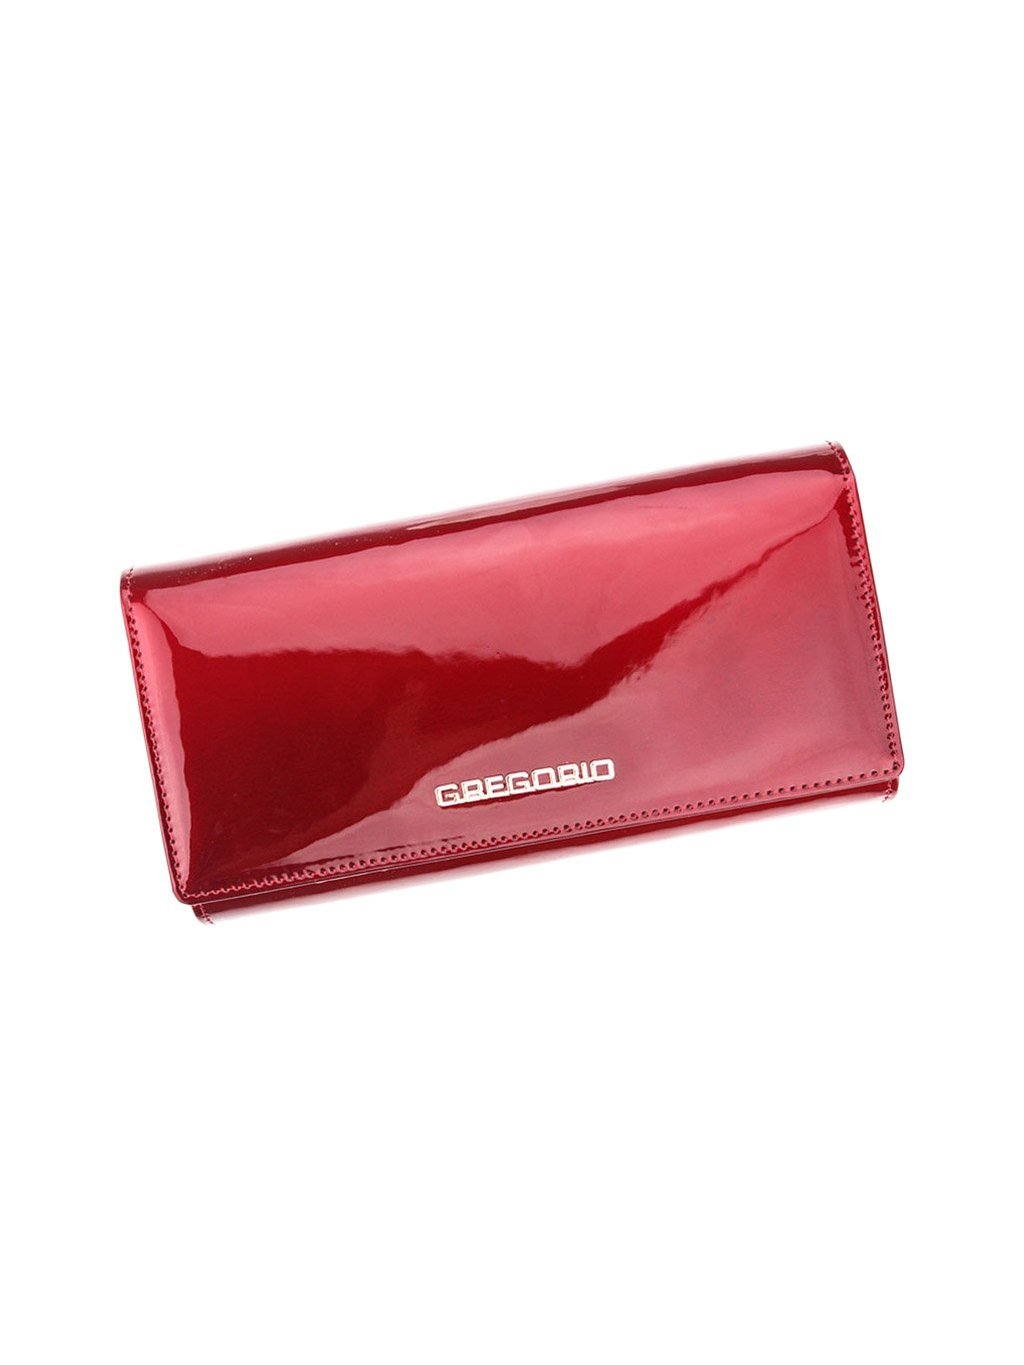 Dámská kožená peněženka Gregorio SH-106 červená